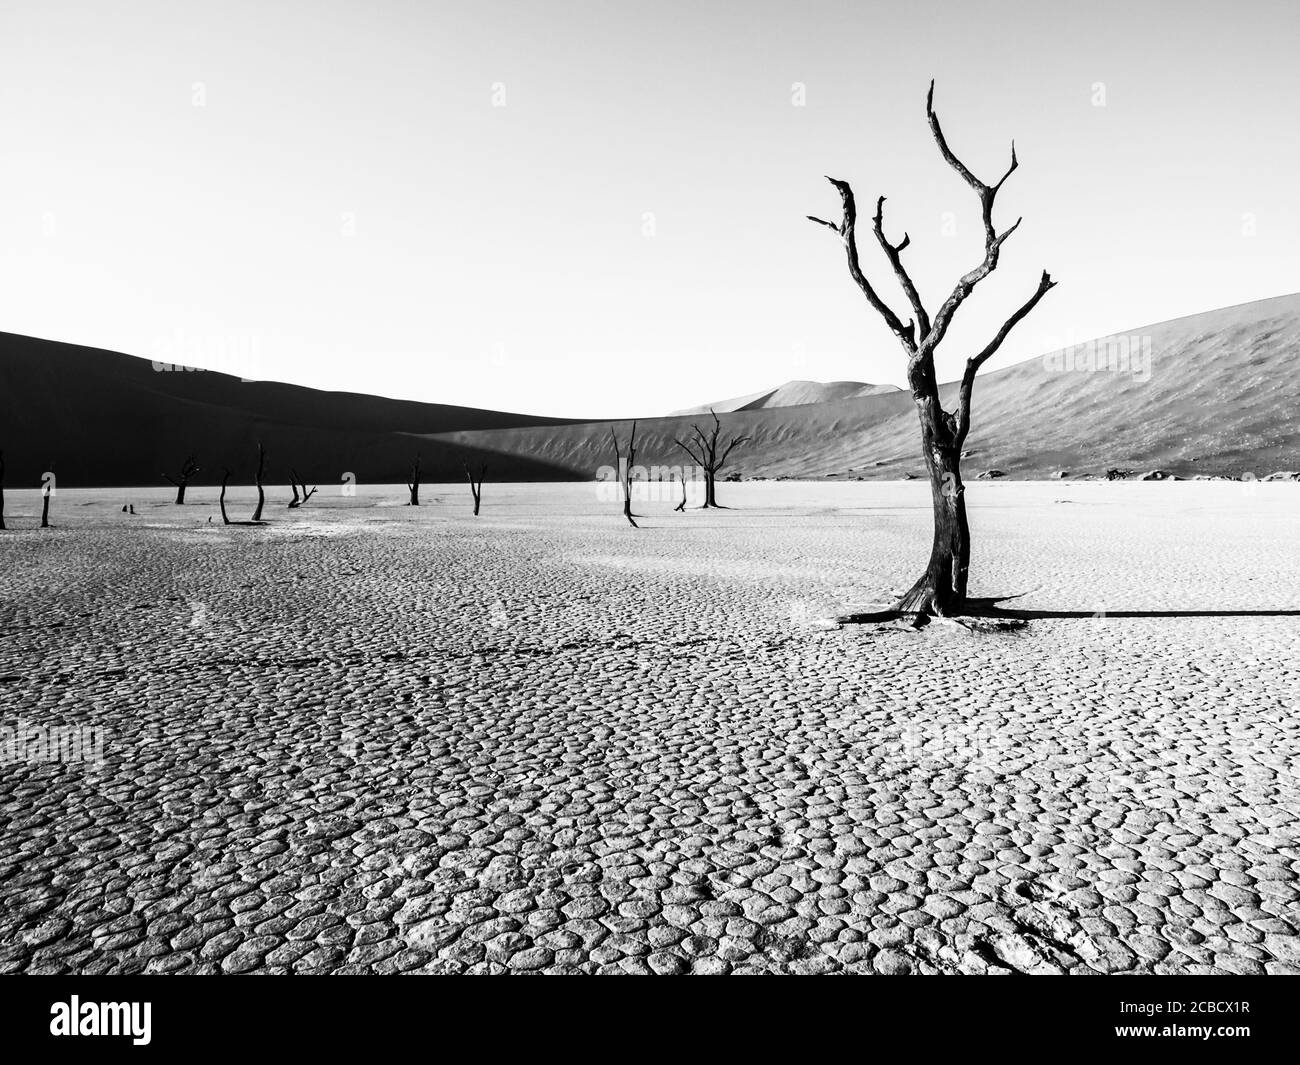 Desolated paesaggio asciutto con alberi morti di spina di cammello in padella di Deadvlei con terreno incrinato nel mezzo di Namib deserto dune rosse, vicino Sossusvlei, Namib-Naukluft Parco Nazionale, Namibia, Africa. Immagine in bianco e nero. Foto Stock